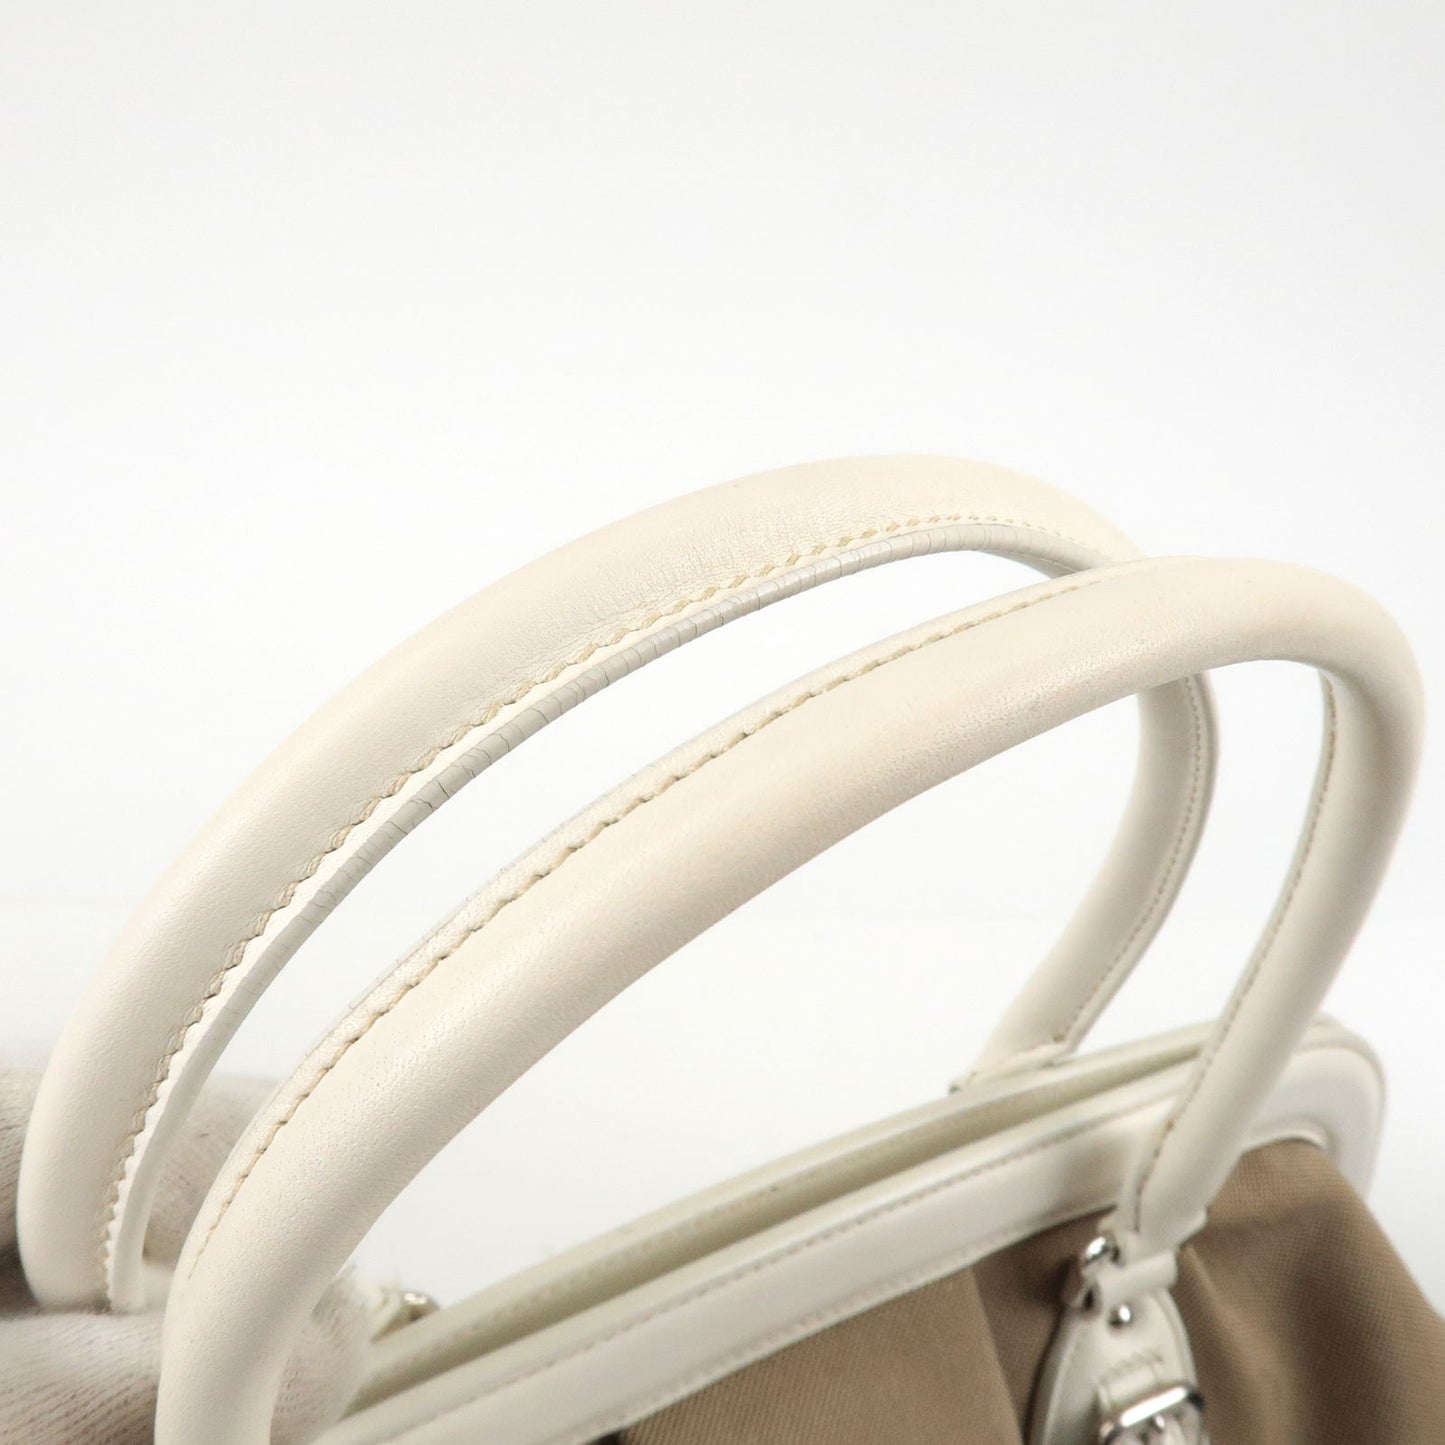 PRADA Logo Jacquard Leather Shoulder Bag Hand Bag Beige Ivory